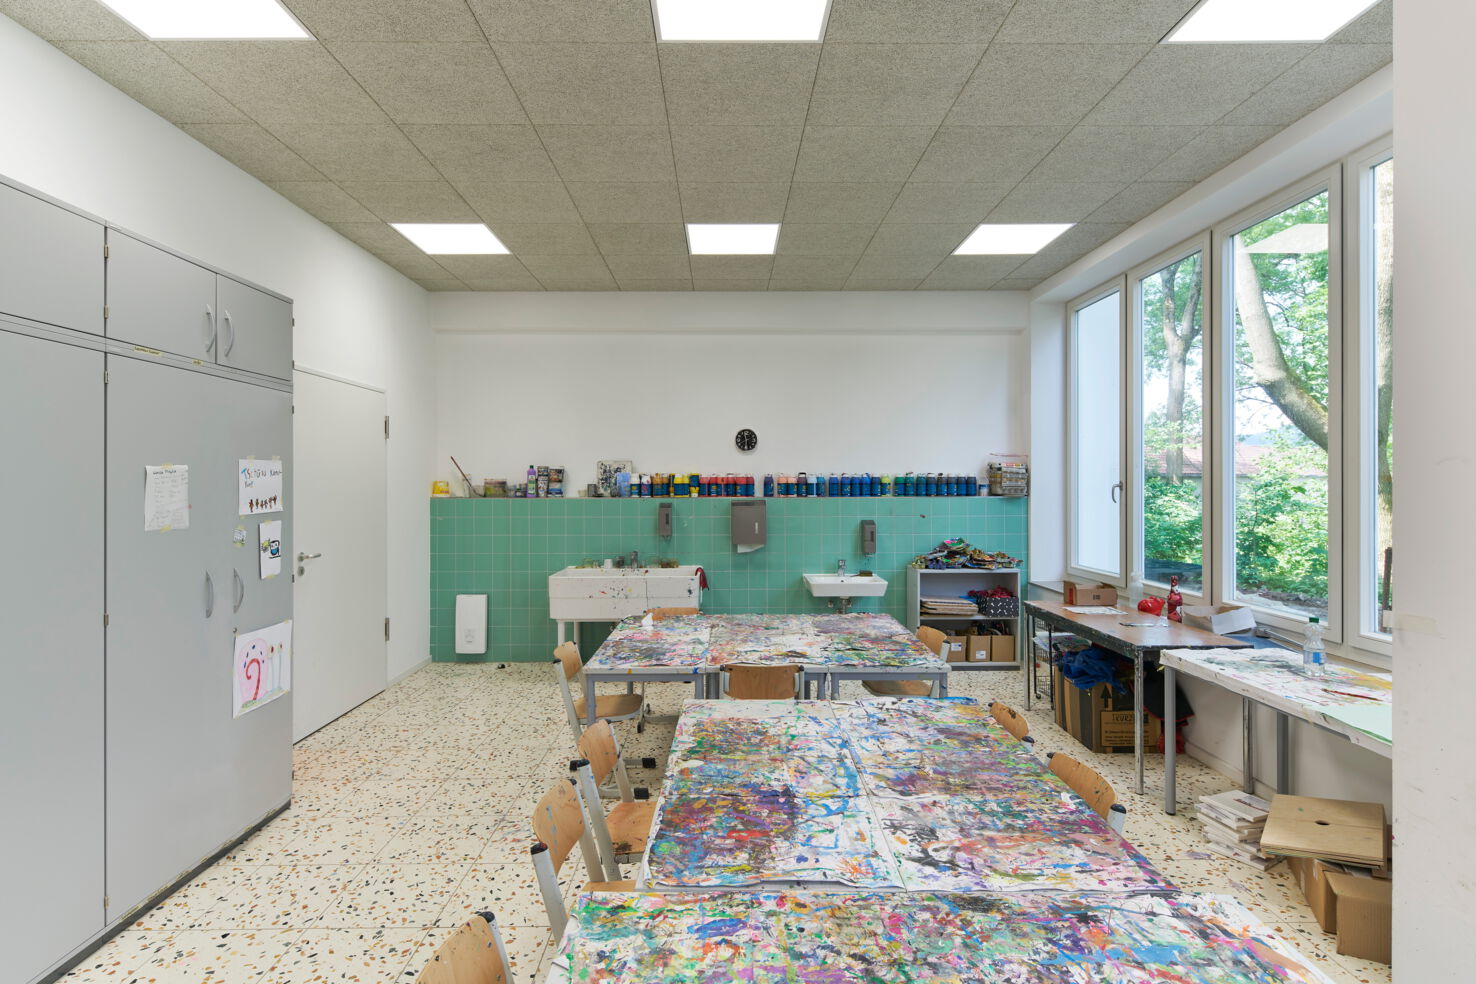 Bild 10 zu Projekt Musik- und Kunstschule Bielefeld, Umbau und Sanierung Nebengebäude